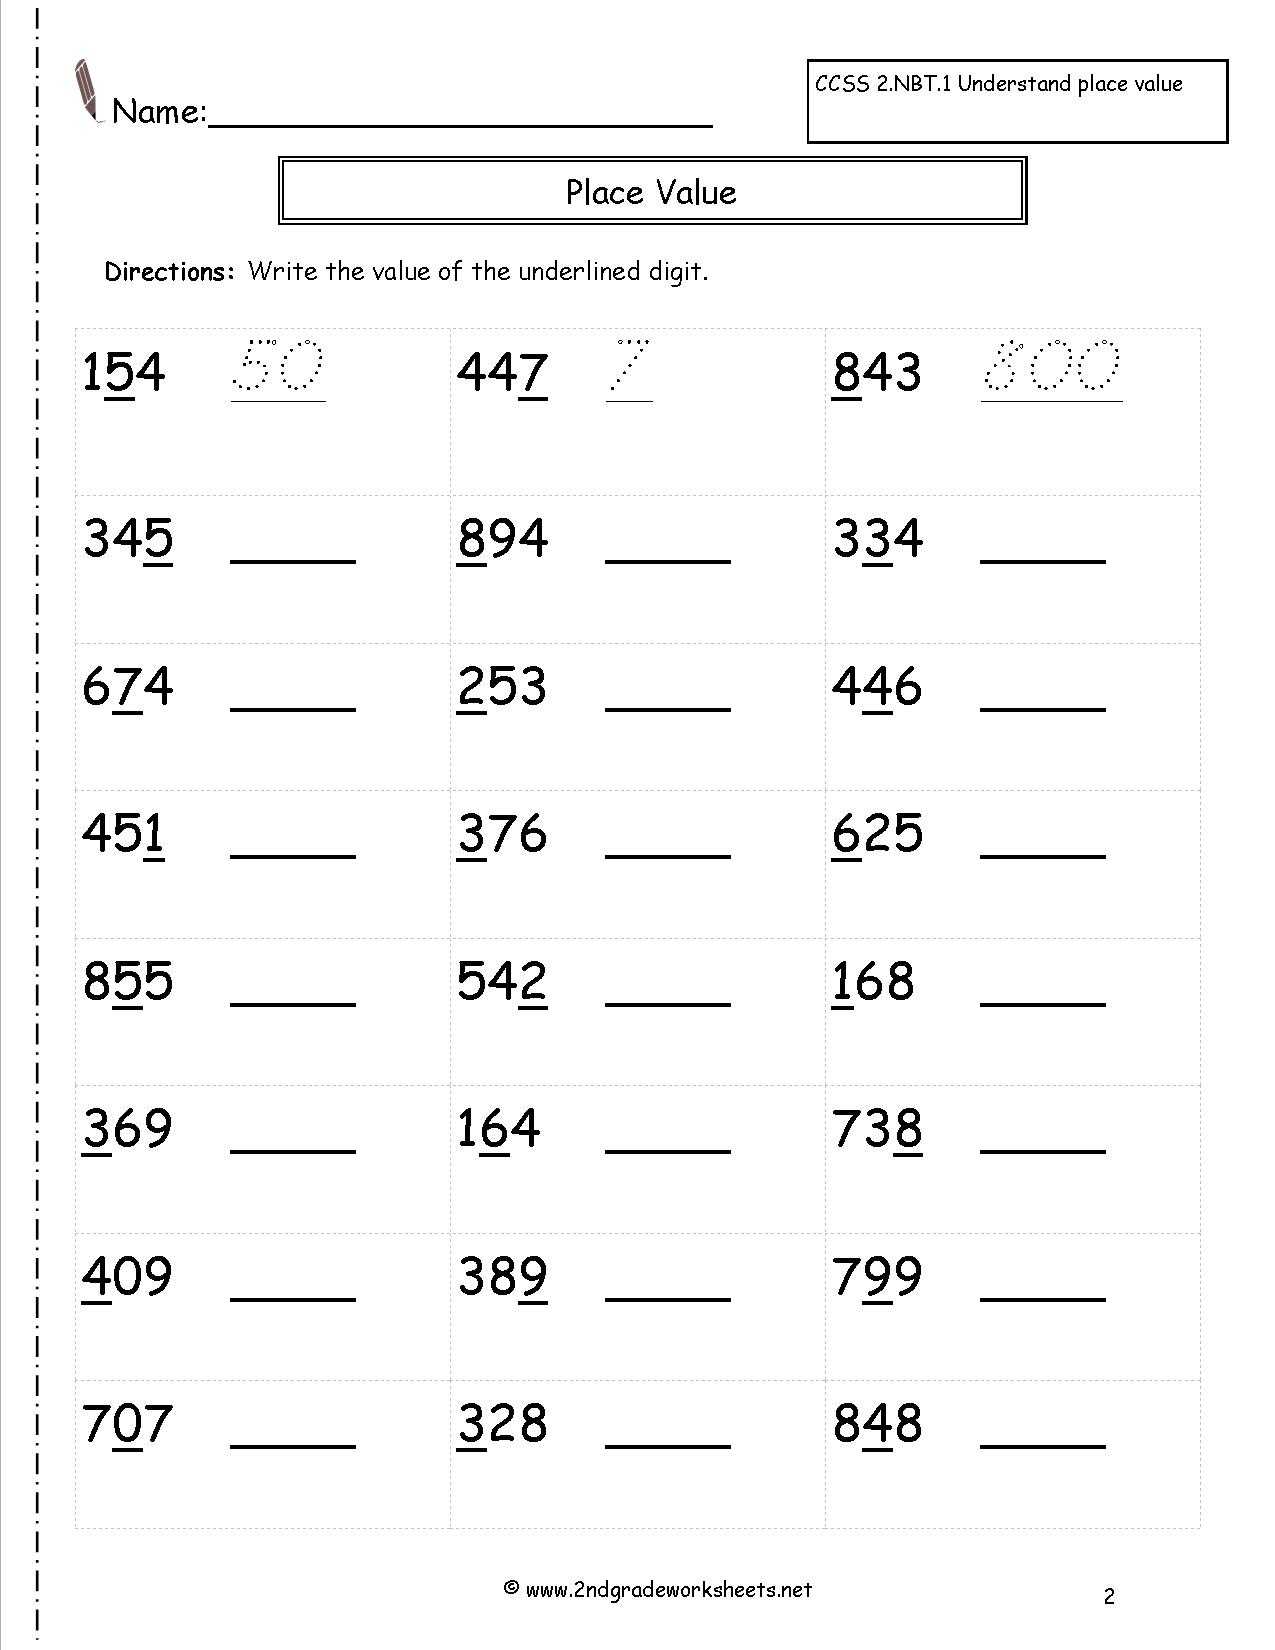 Place Value Worksheets for Kindergarten together with Place Value Worksheets for Grade 2 the Best Worksheets Image